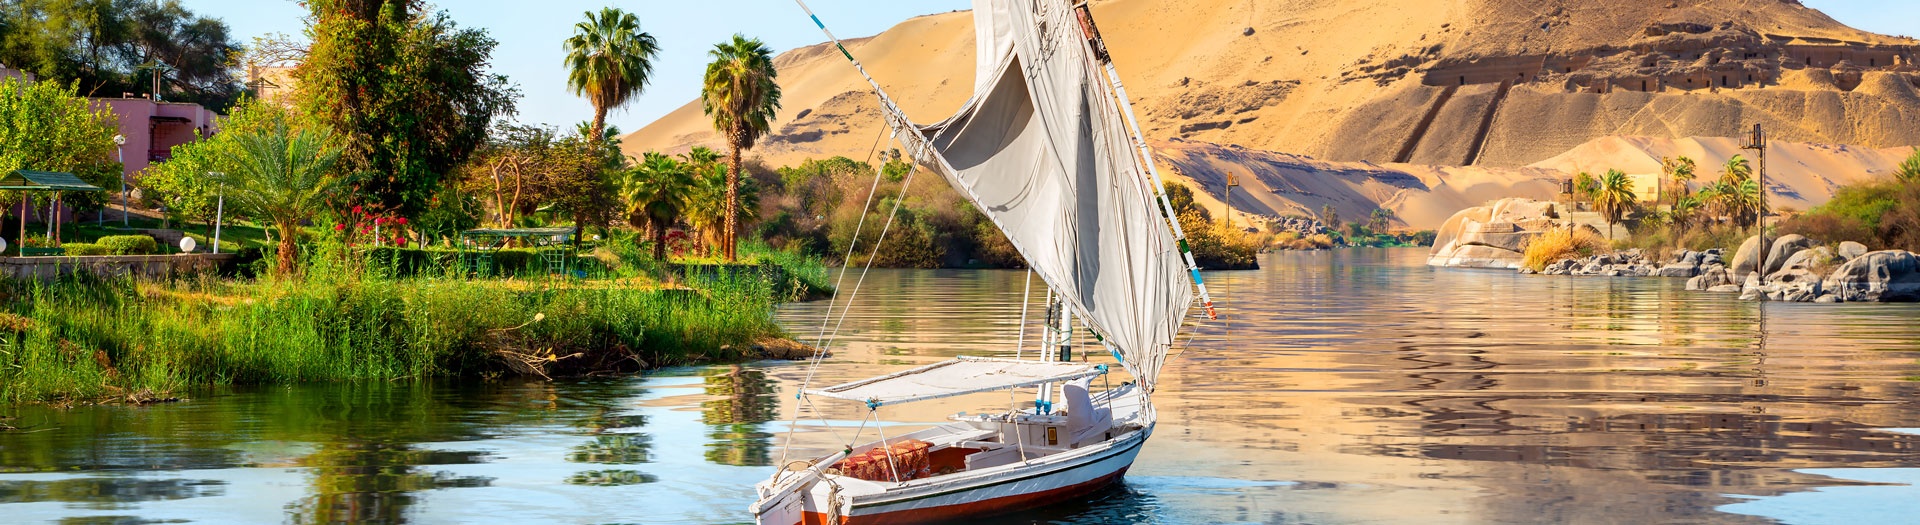 Le Nil en felouque